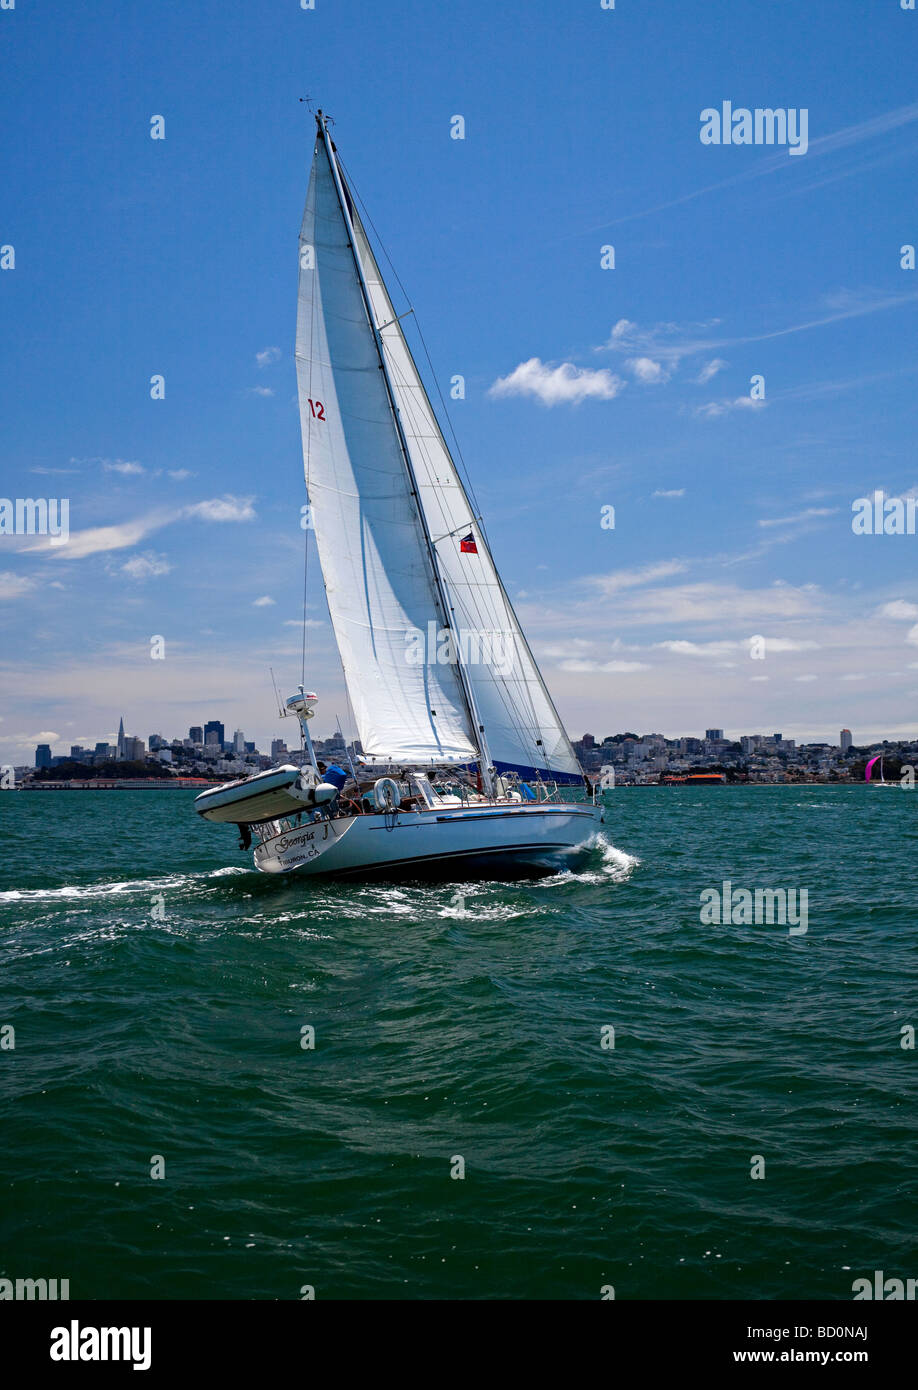 Sailing yacht sulla Baia di San Francisco, California, Stati Uniti d'America con city in background Foto Stock